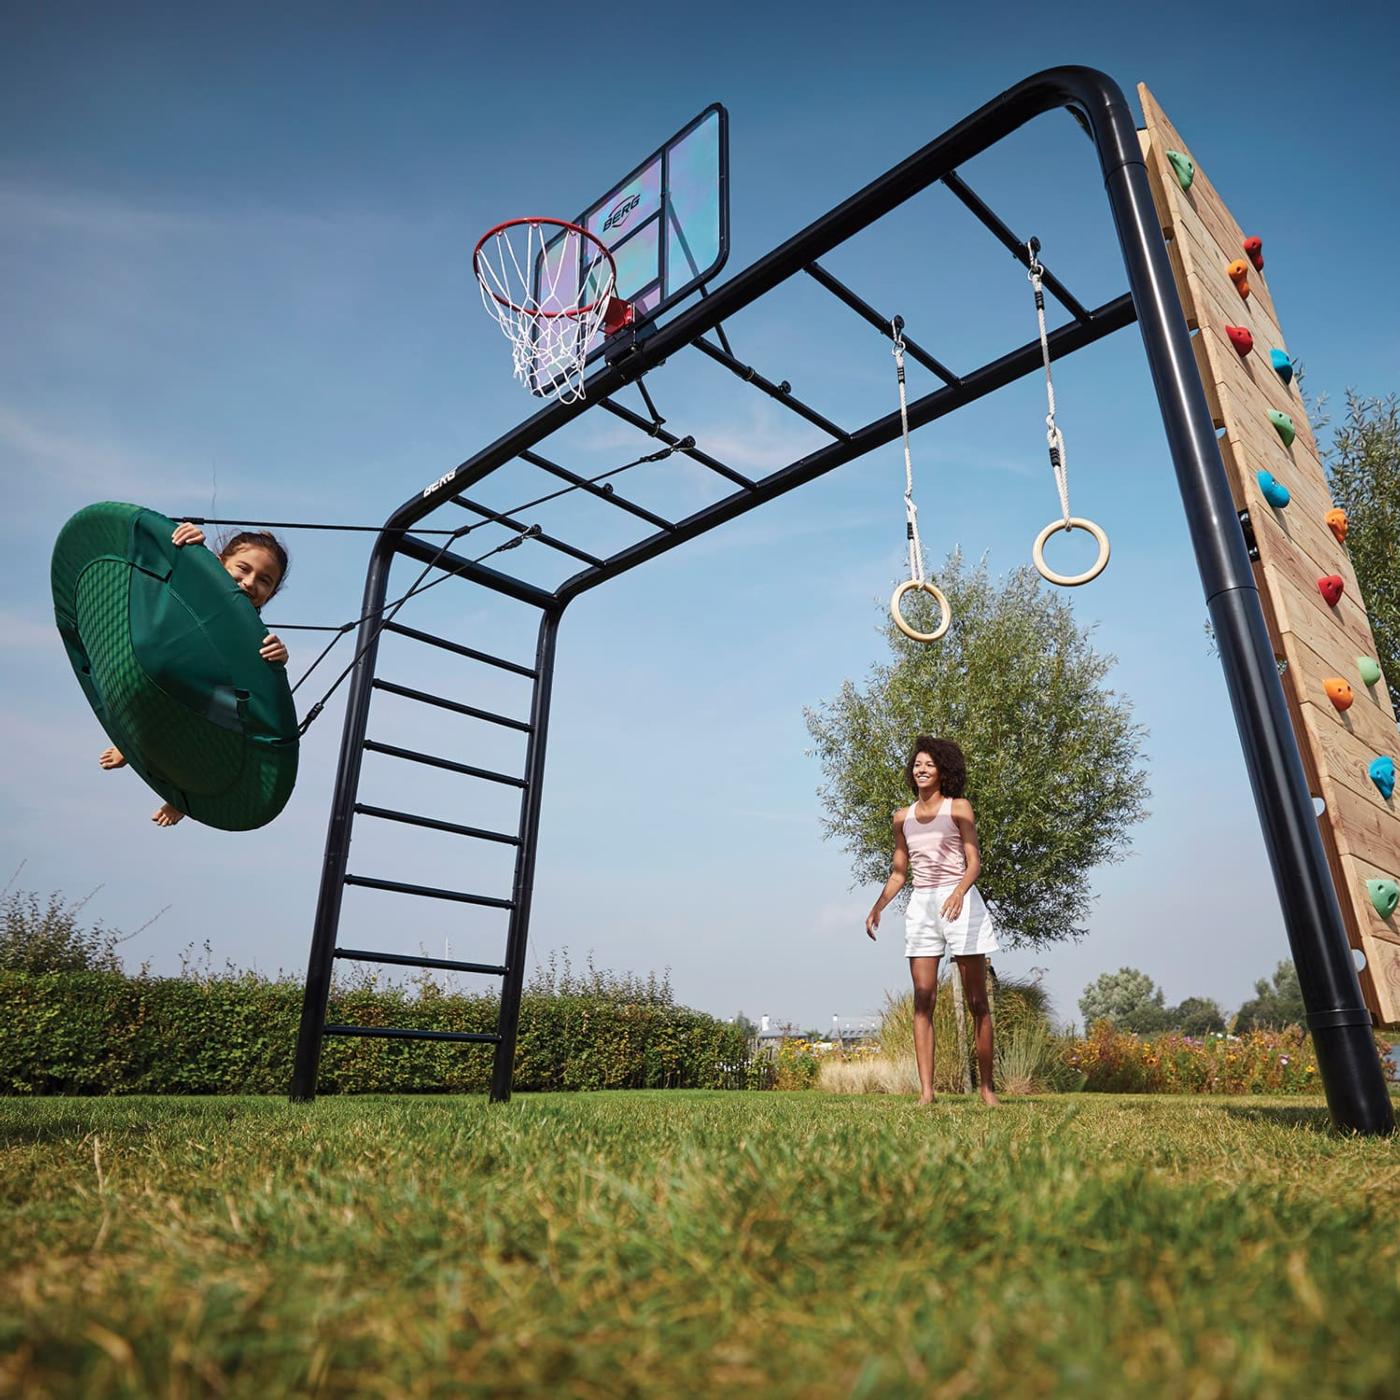 BERG PLAYBASE parque infantil metálico para lazer familiar: brincar, praticar desporto e relaxar. Para crianças e adultos.